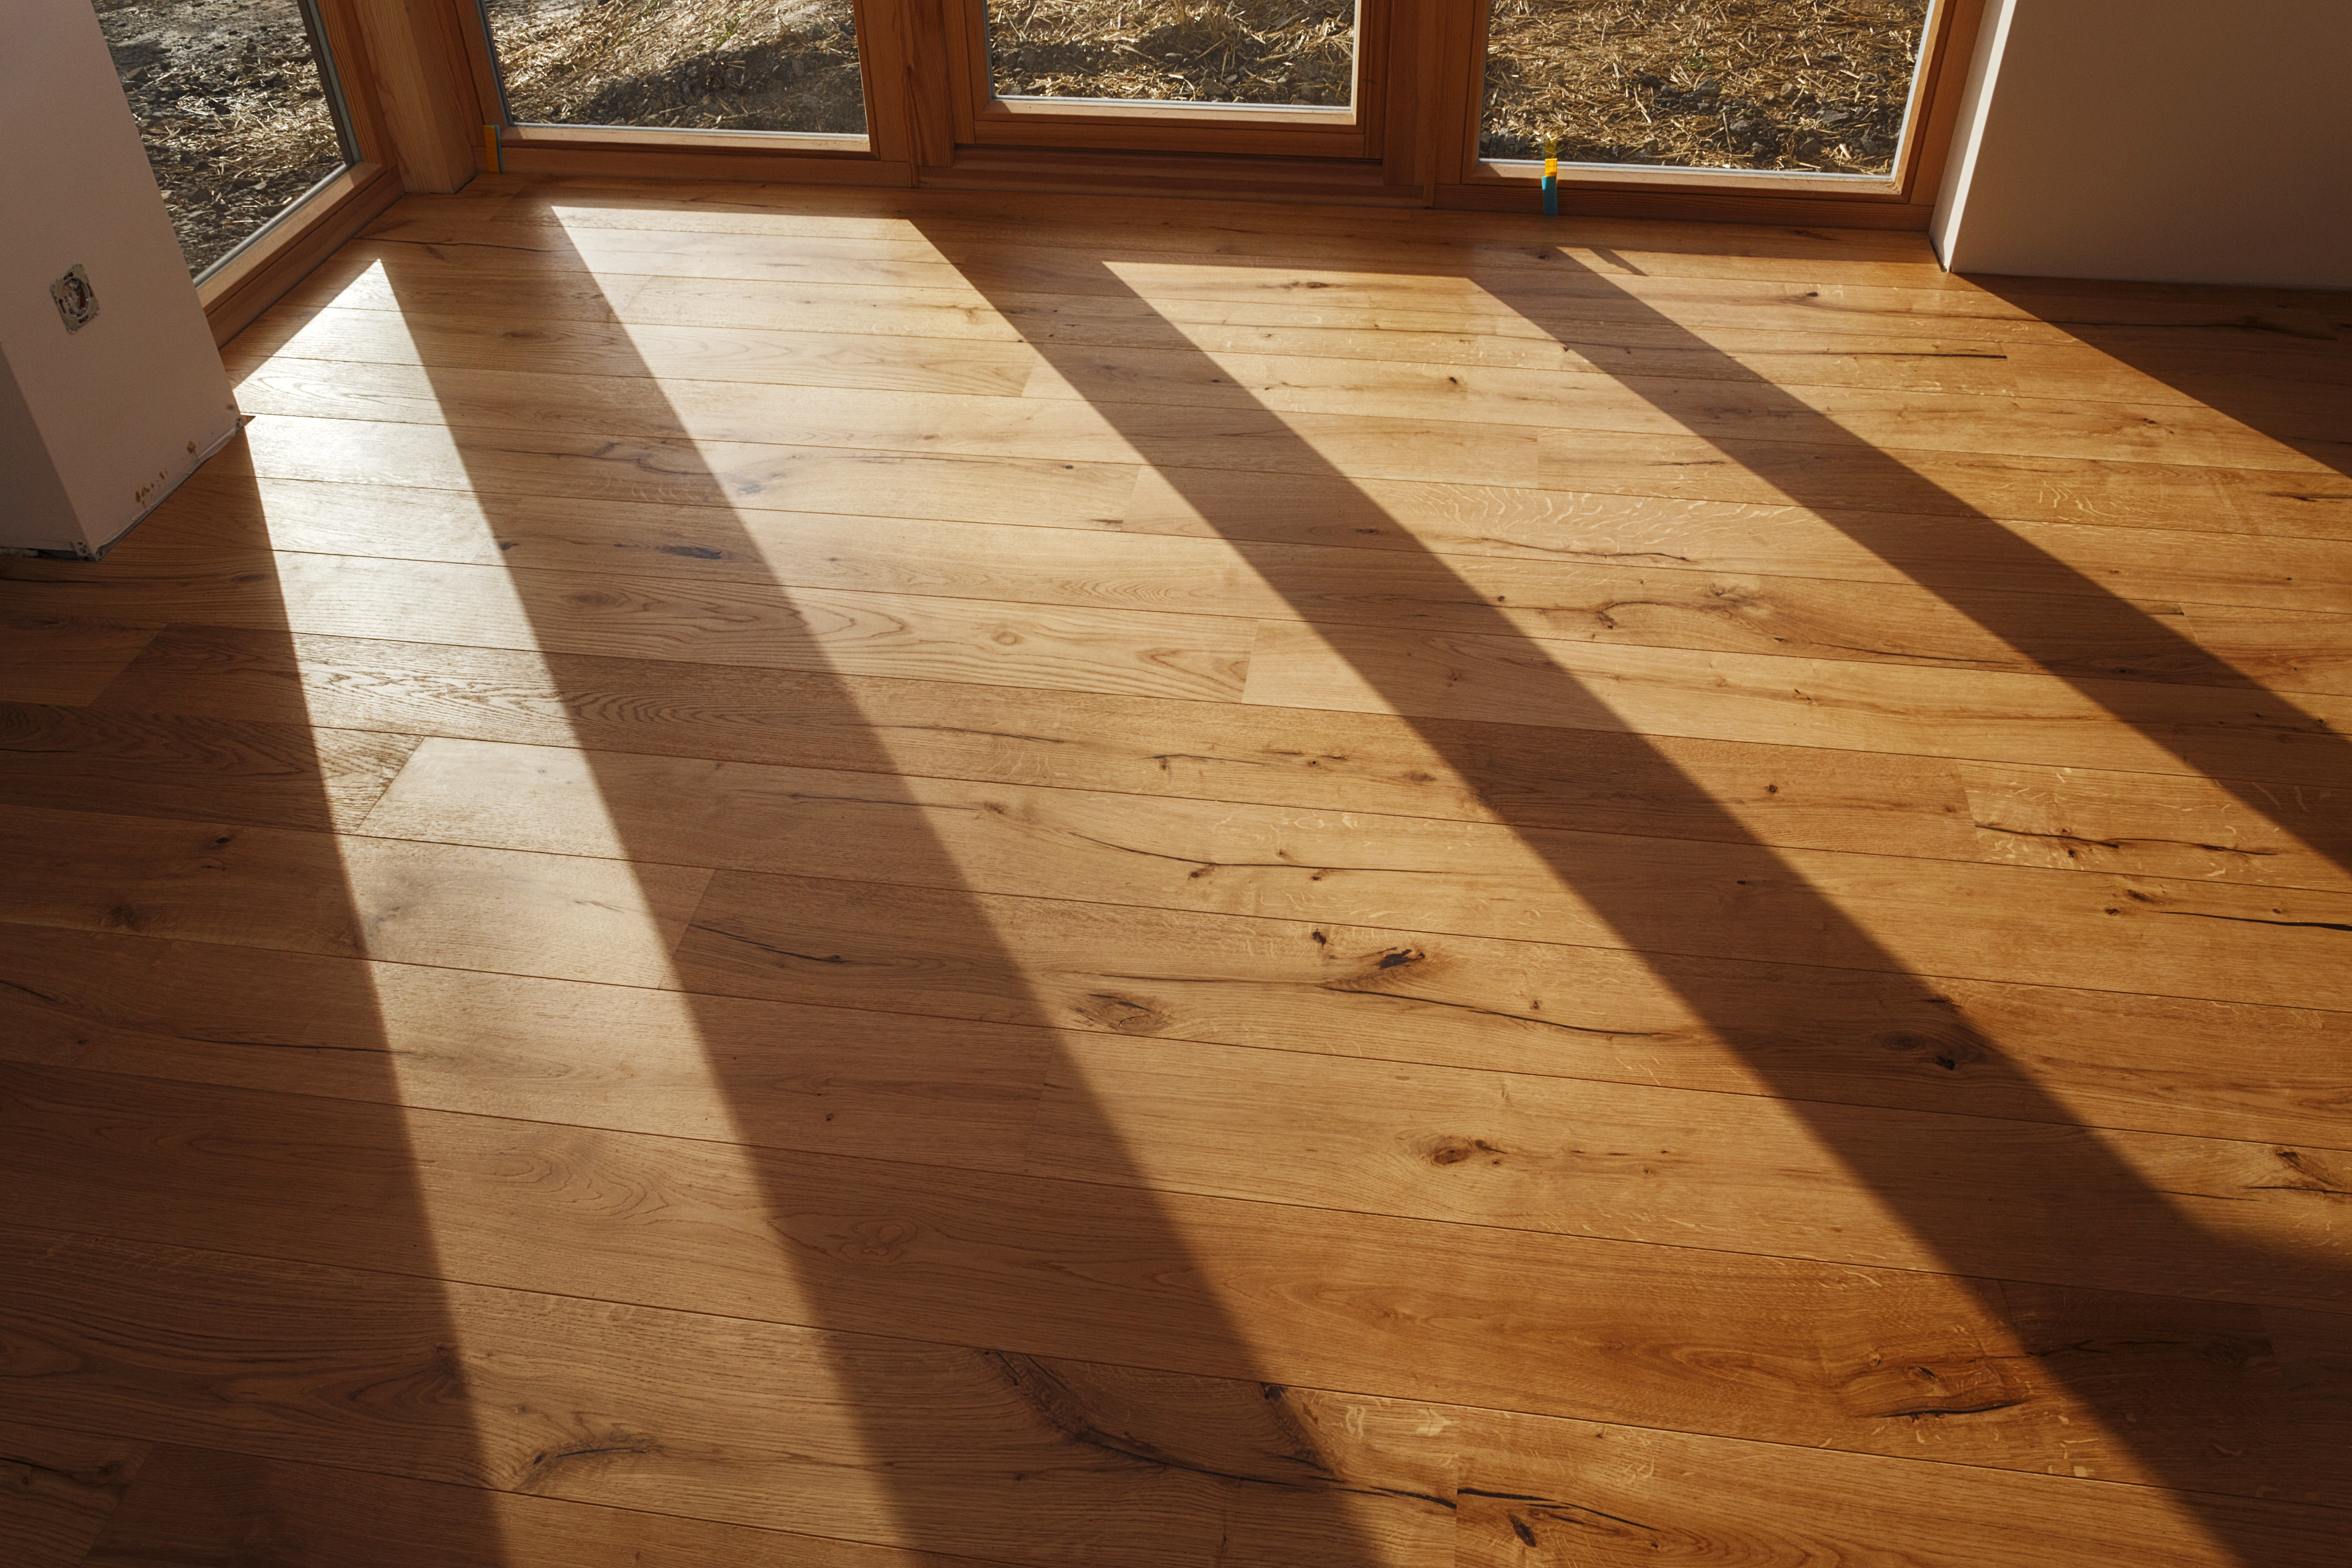 Wood Flooring Hardwood Versus, What Is The Most Durable Type Of Wood Flooring